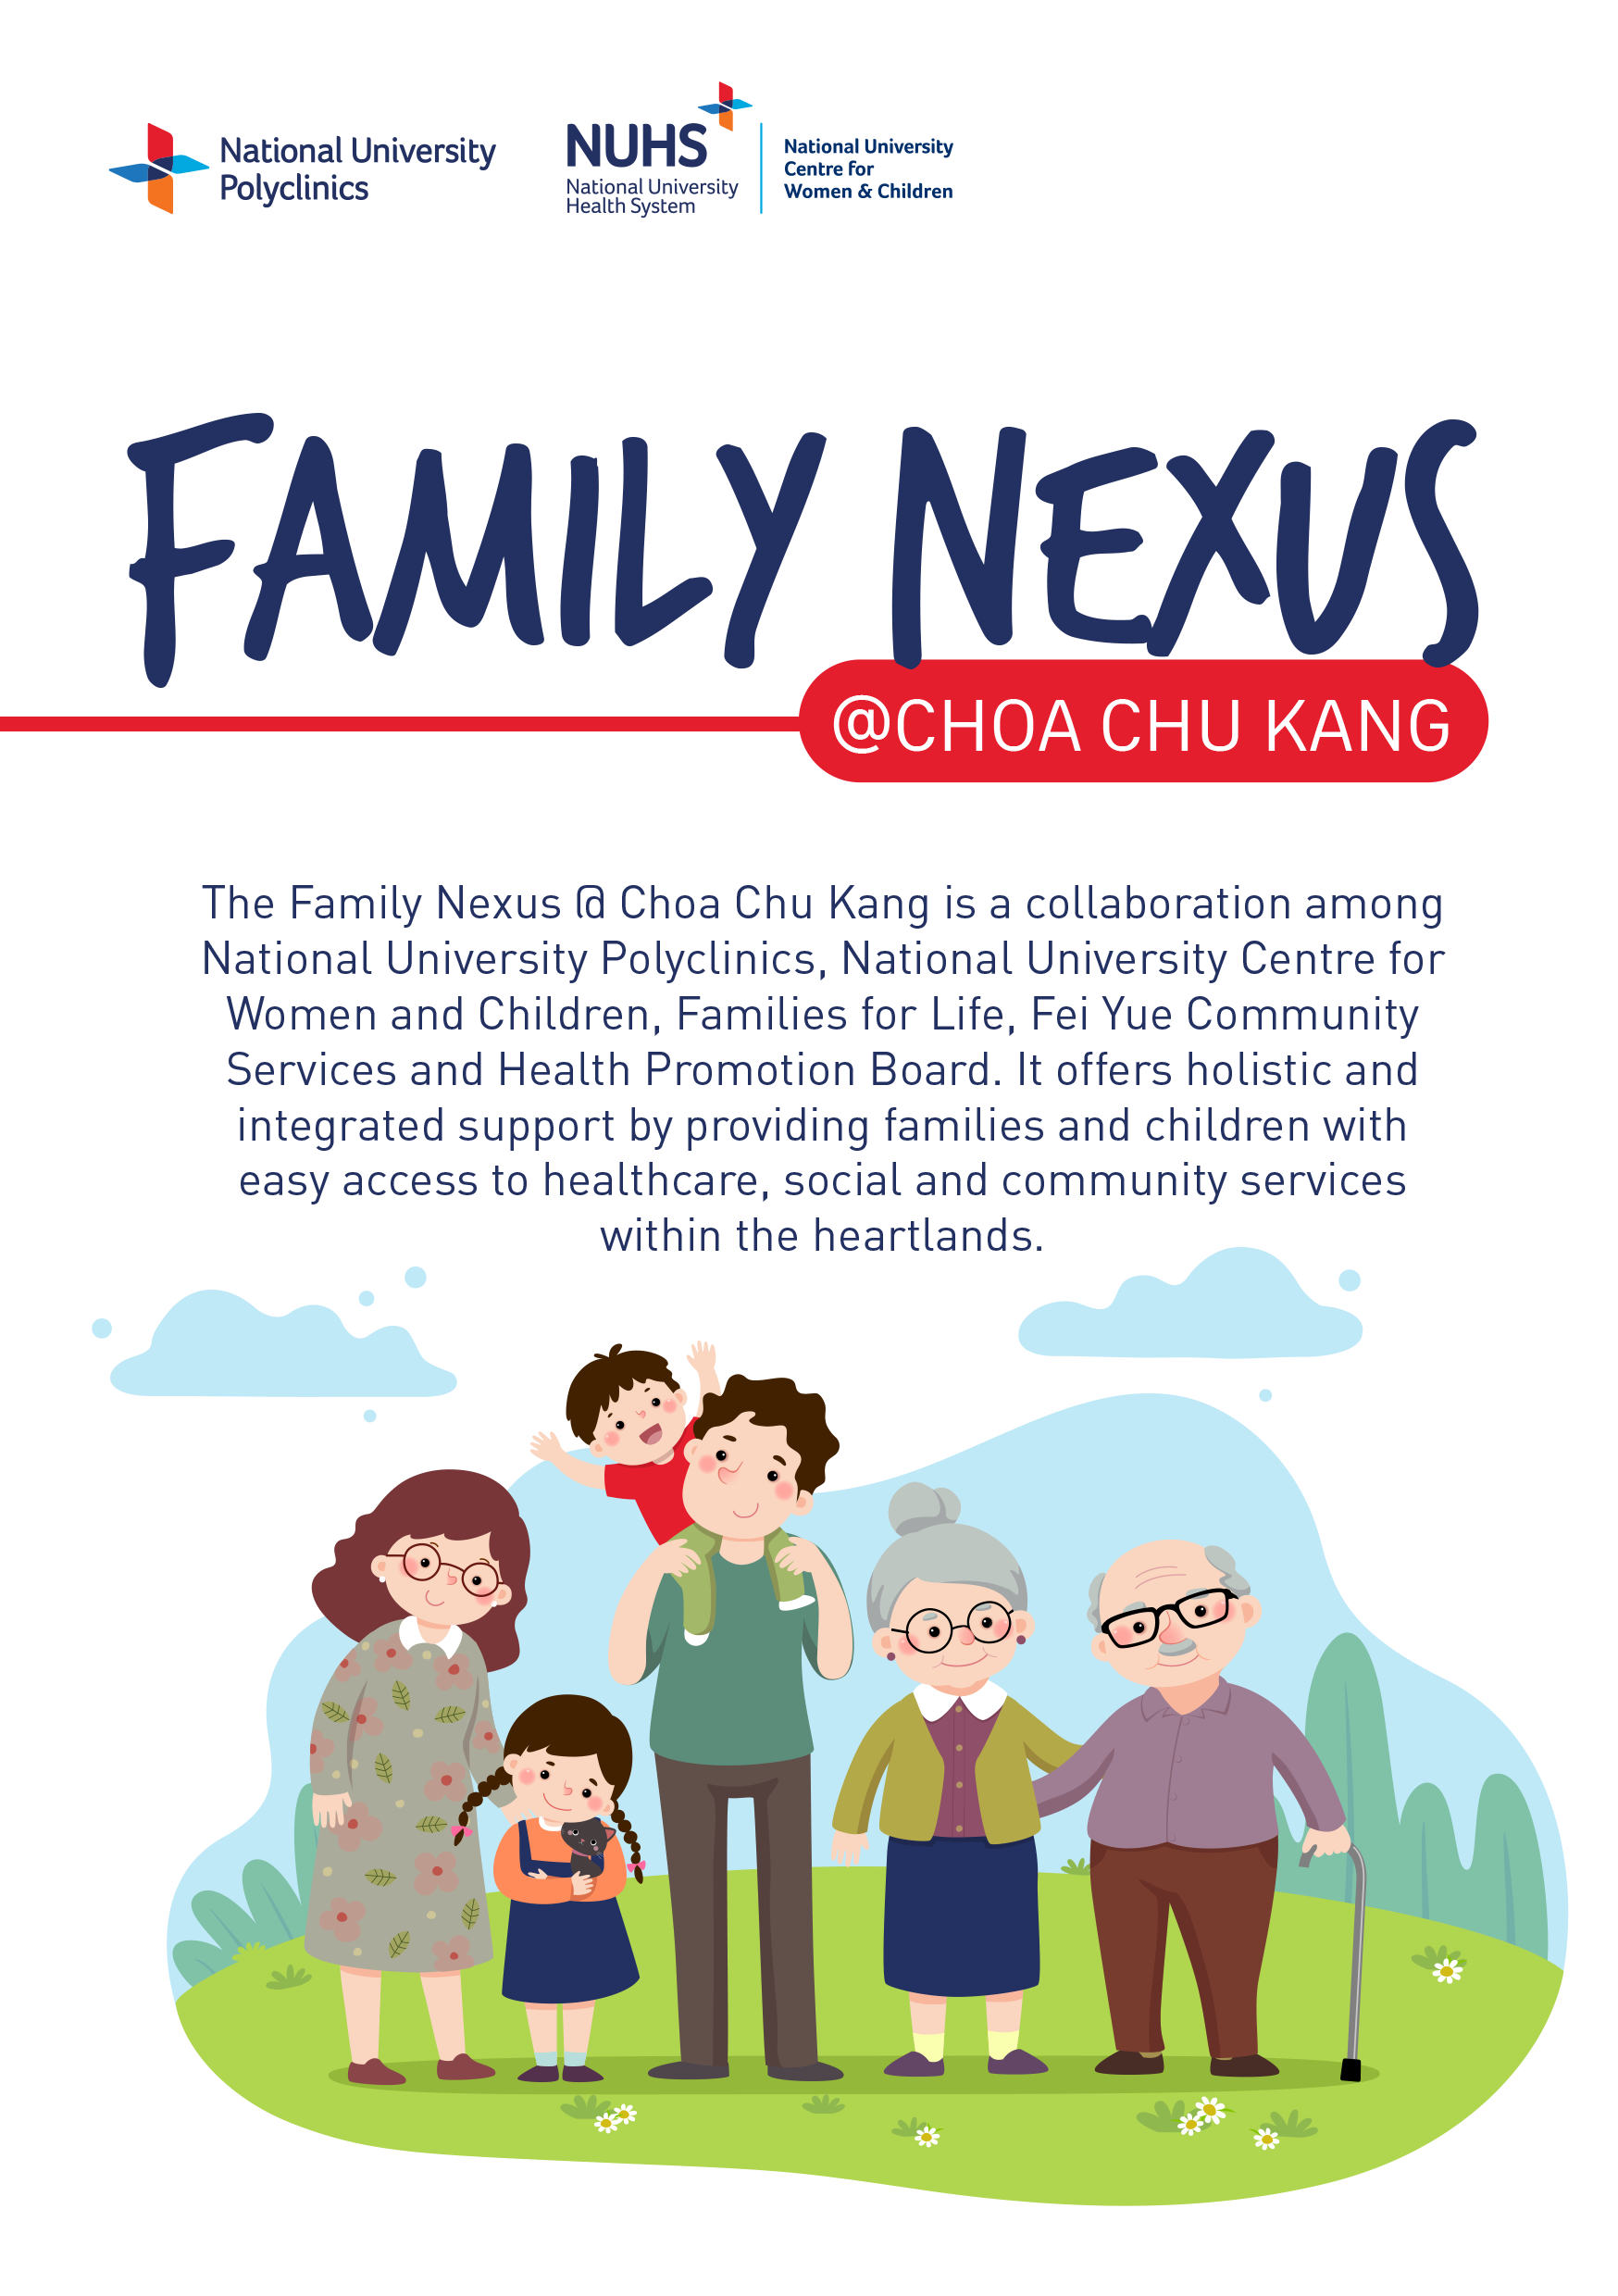 Family Nexus @ Choa Chu Kang